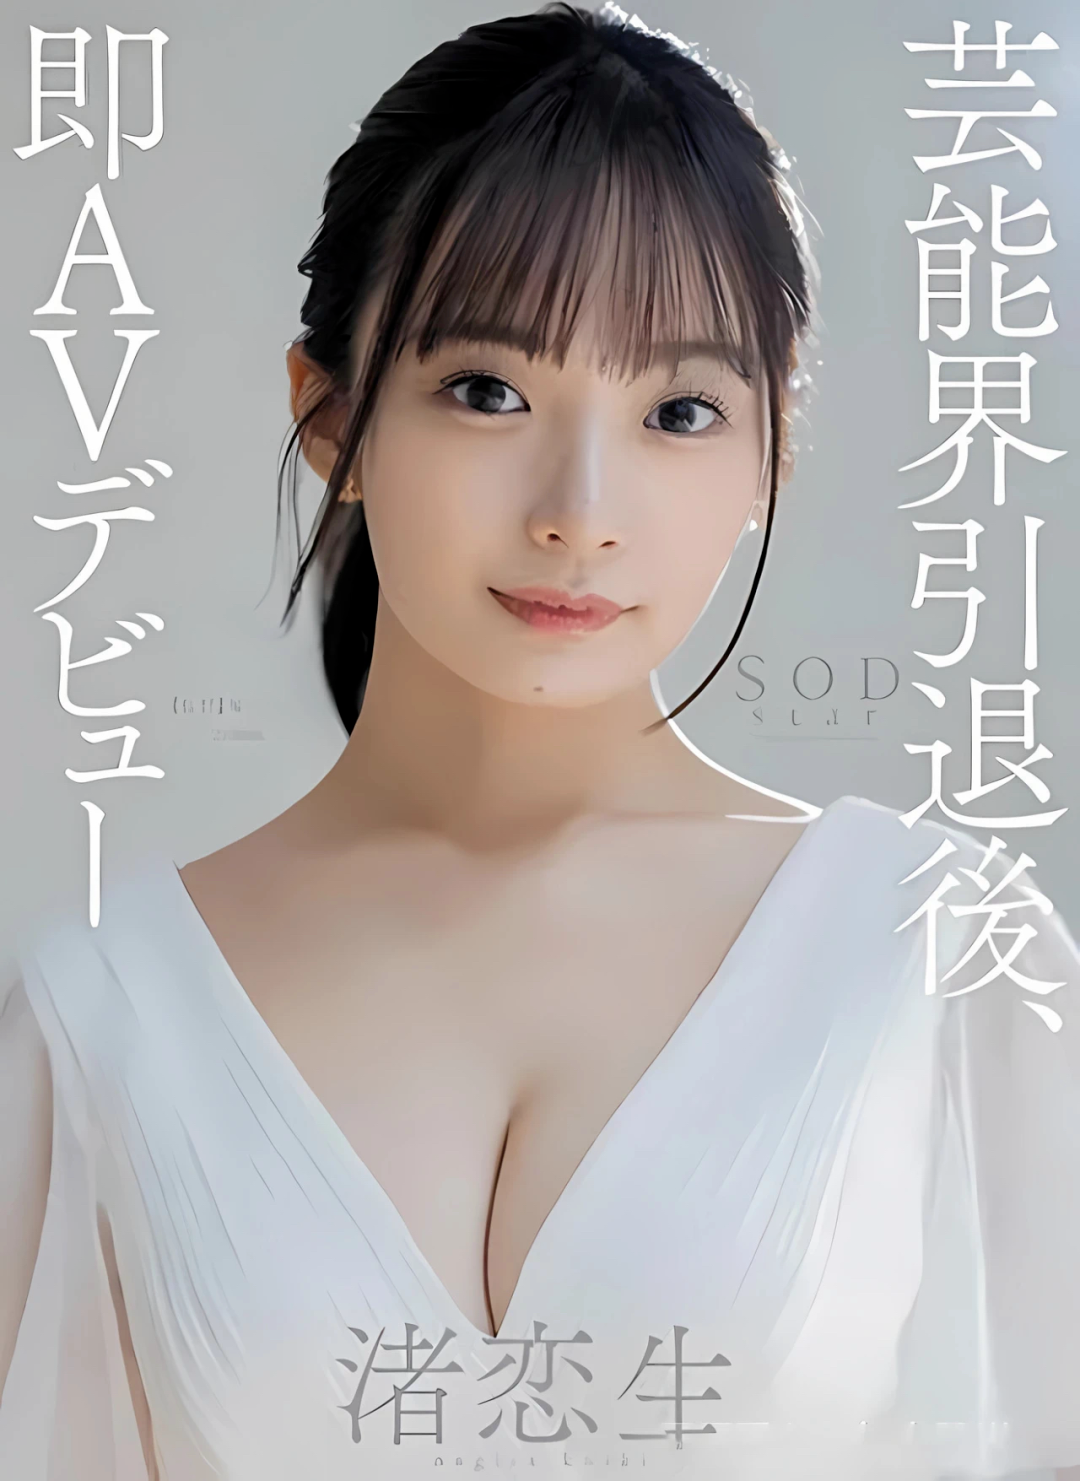 她也拍AV，日本女明星为何纷纷转行色情业